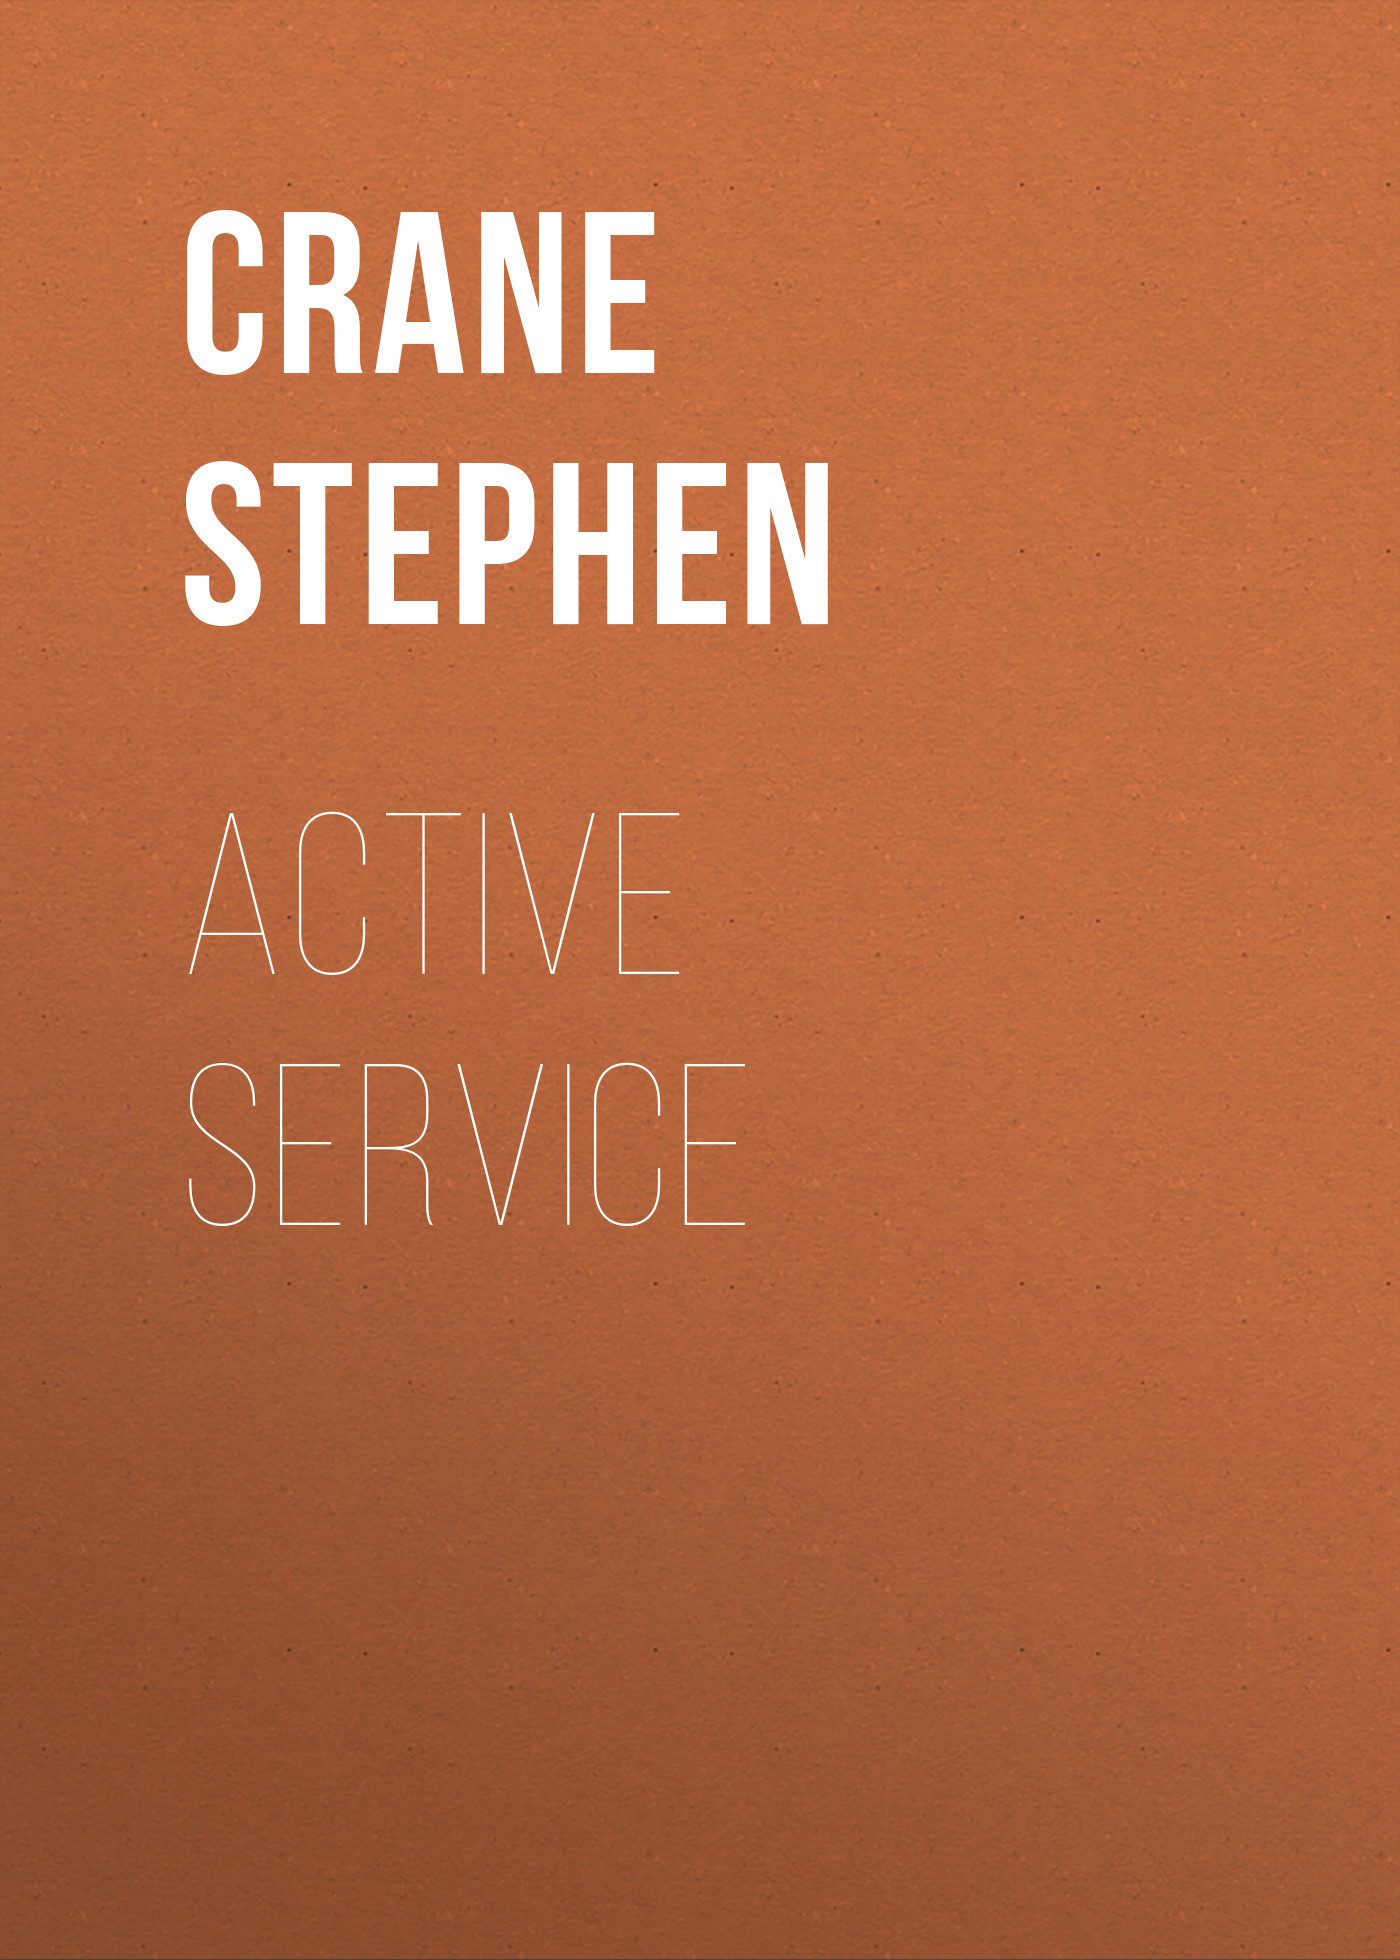 Книга Active Service из серии , созданная Stephen Crane, может относится к жанру Зарубежная классика, Литература 19 века, Зарубежная старинная литература. Стоимость электронной книги Active Service с идентификатором 34842158 составляет 0 руб.